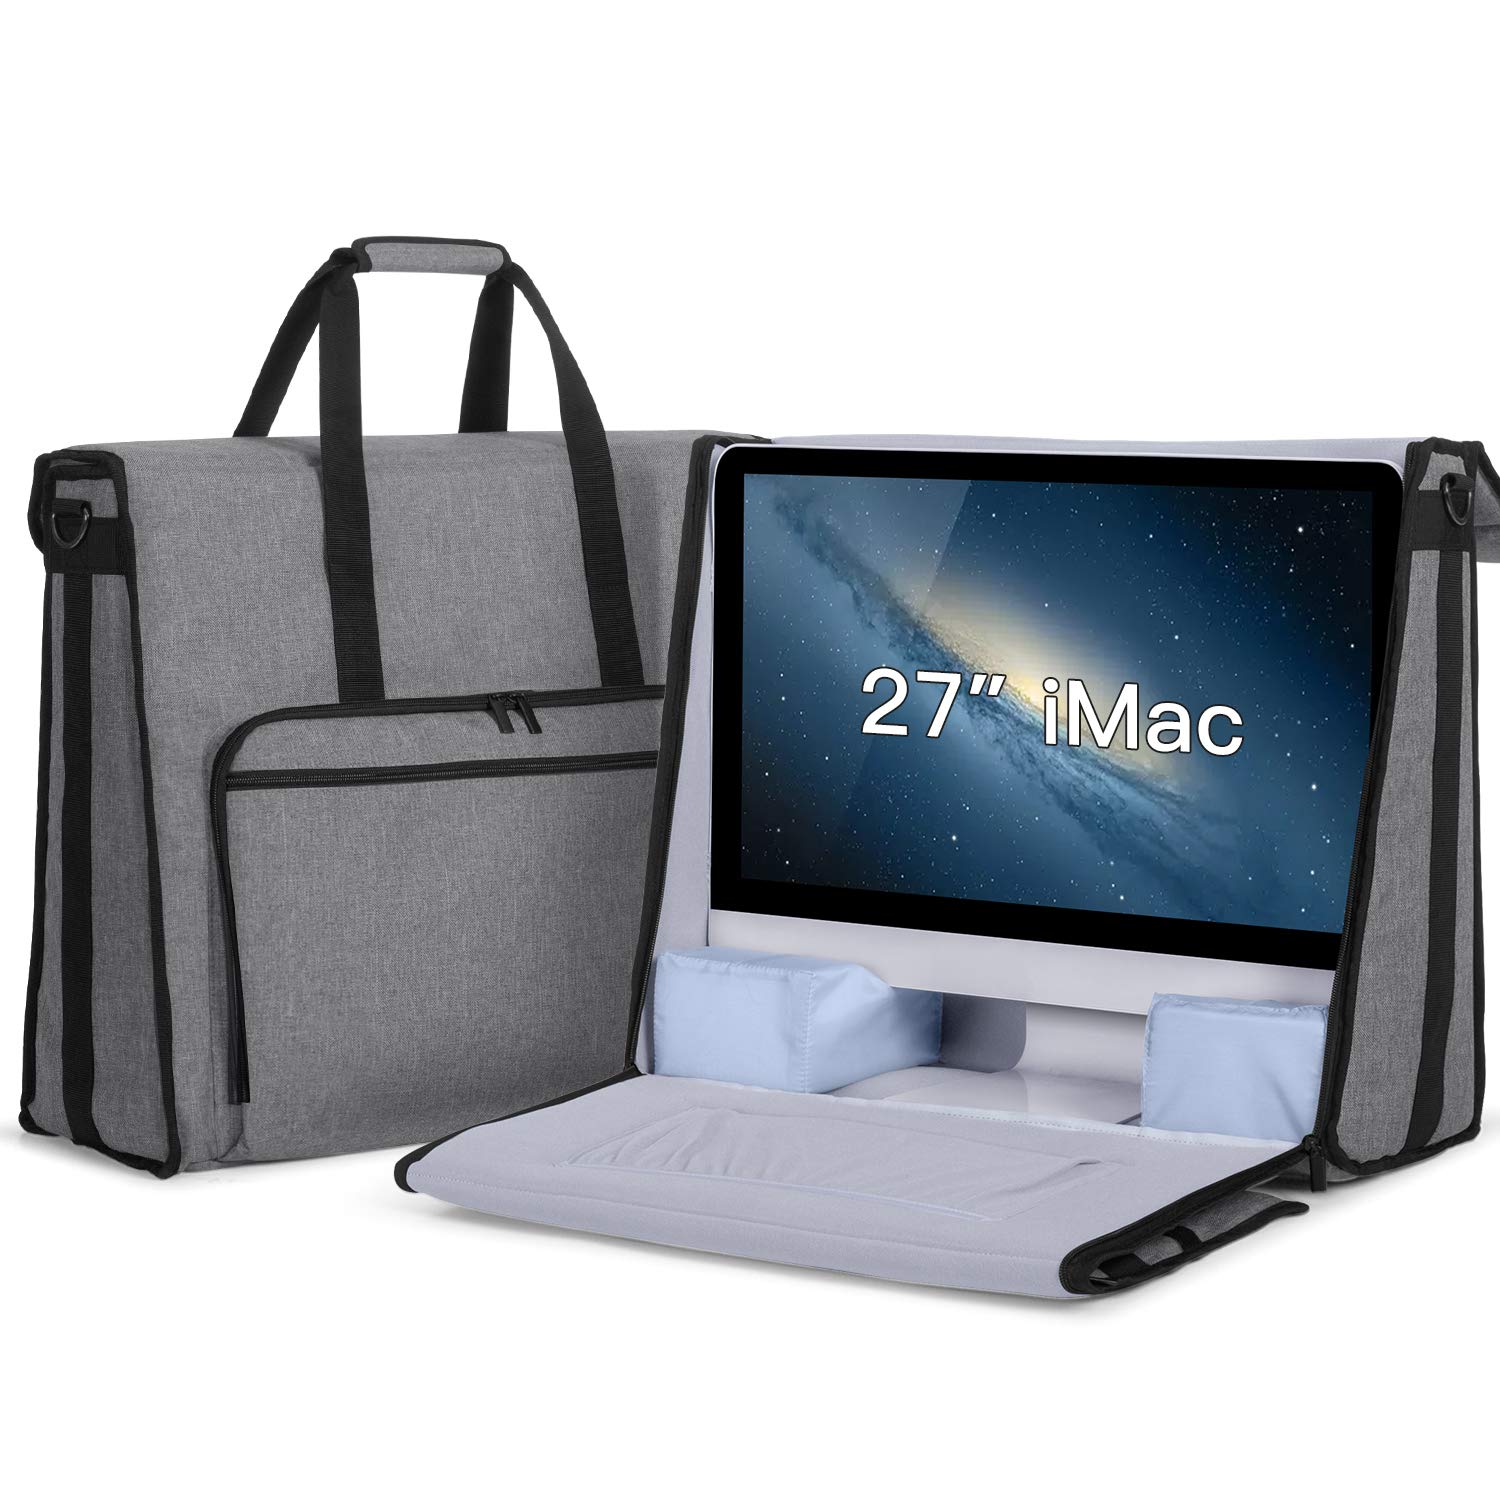 Classic Blue iMac G3